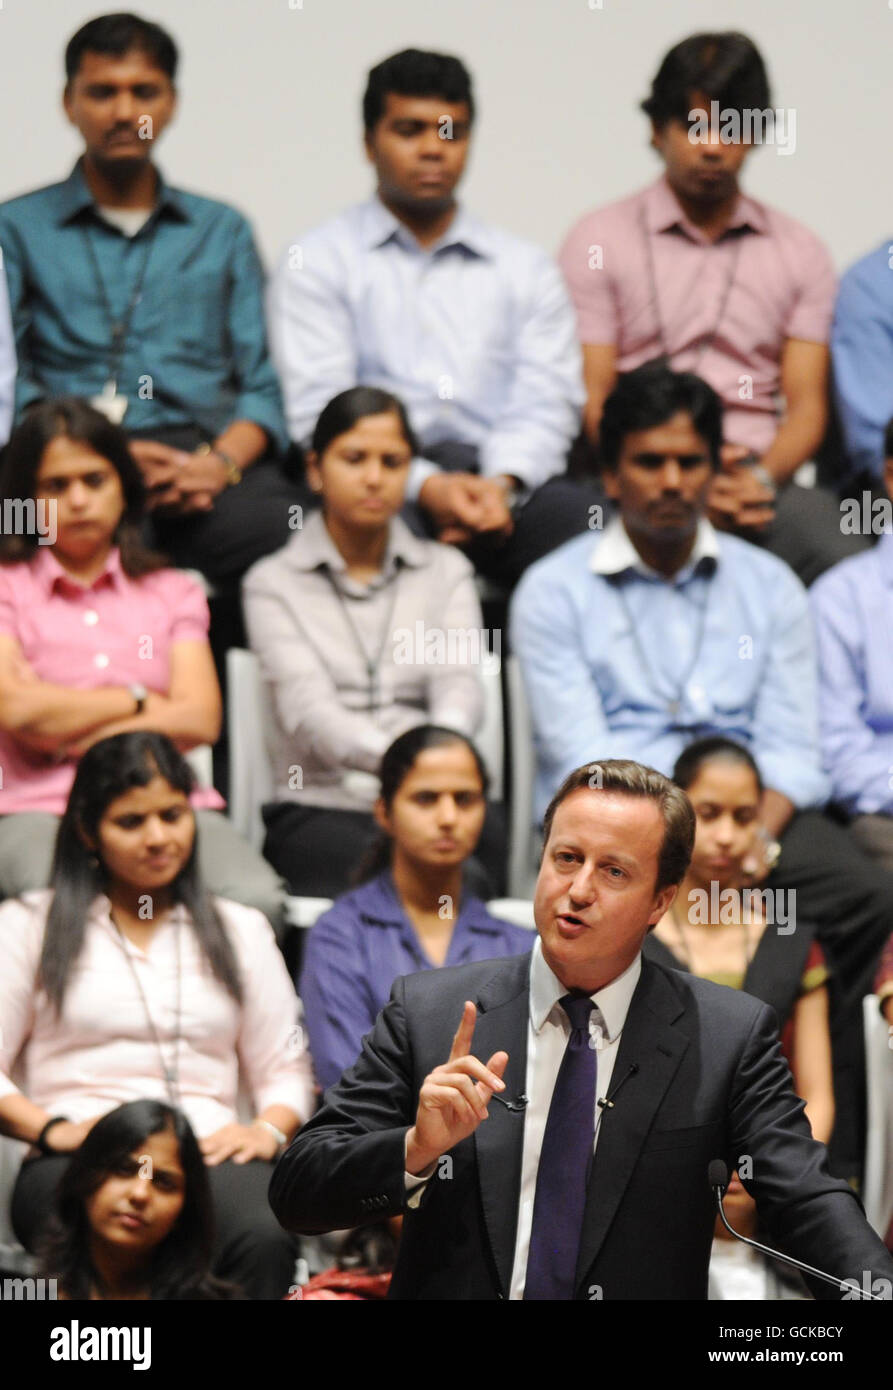 Le Premier ministre David Cameron s'adresse aux employés et aux invités d'Infosys à Bangalore, au cours de sa visite de trois jours en Inde. Banque D'Images